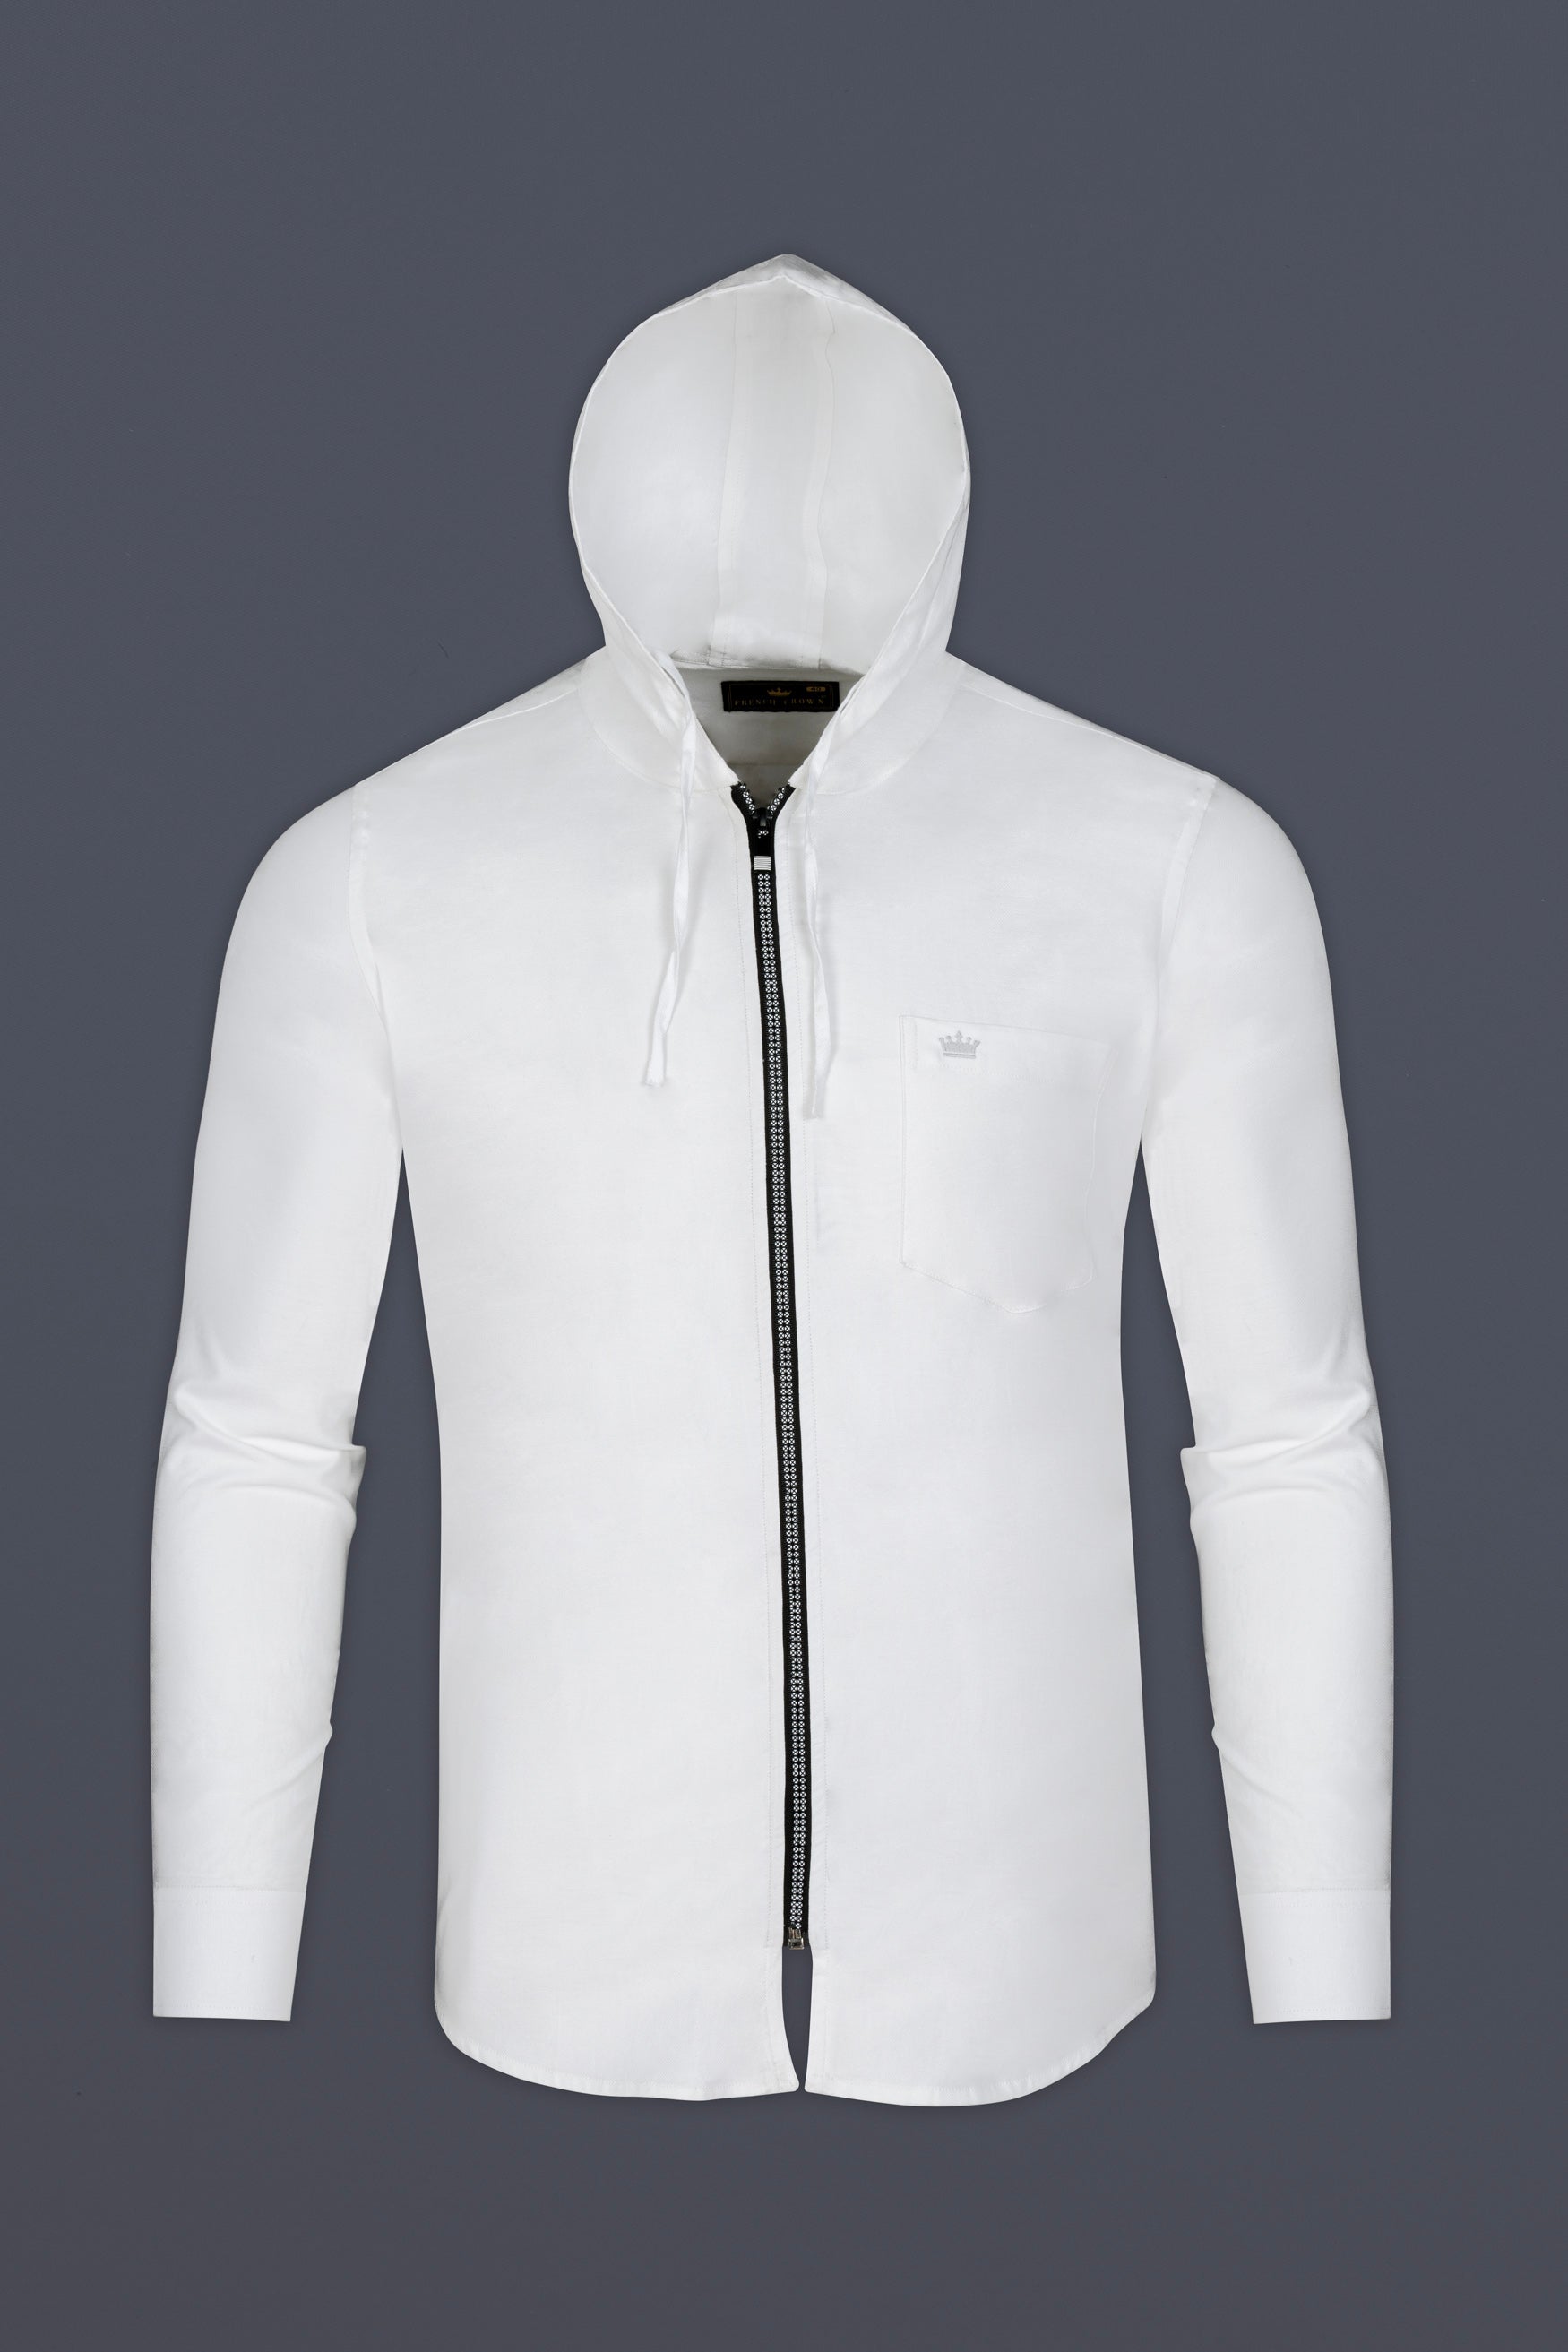 Bright White Dobby Zipper Closure with Hoodie Designer Shirt